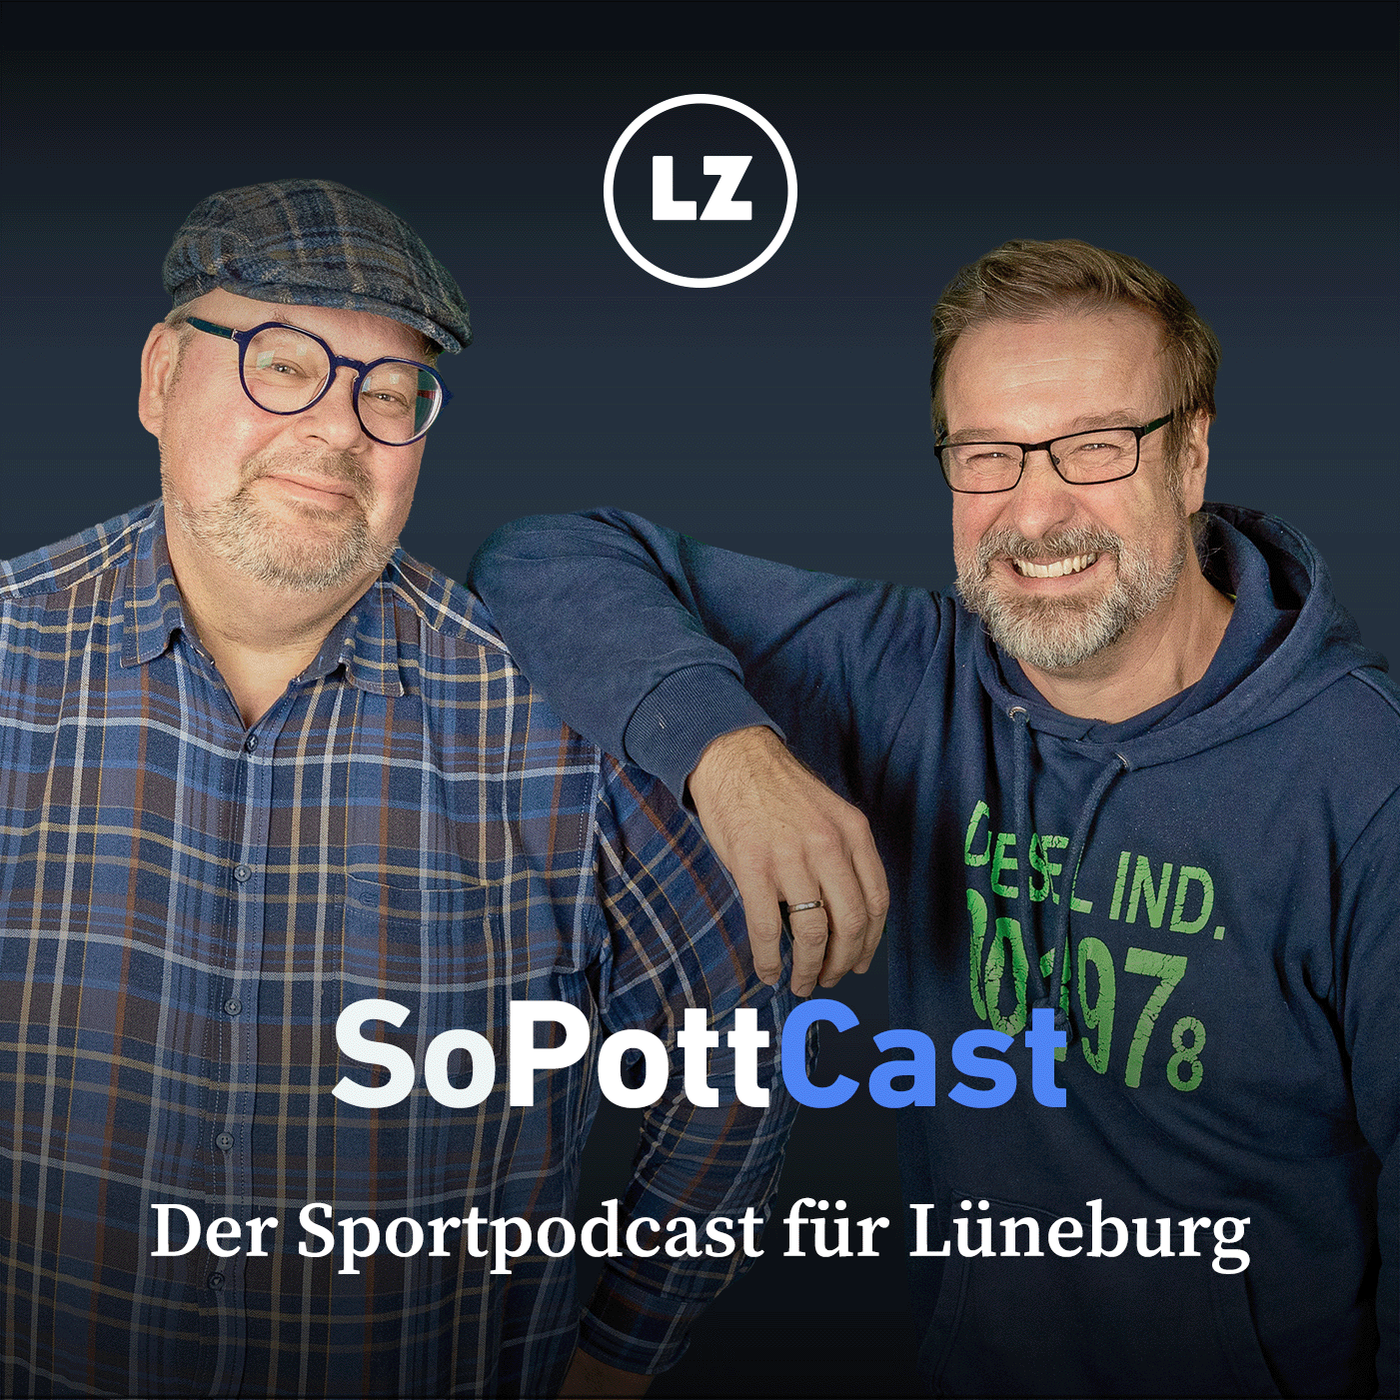 SoPottCast - Der Sportpodcast für Lüneburg